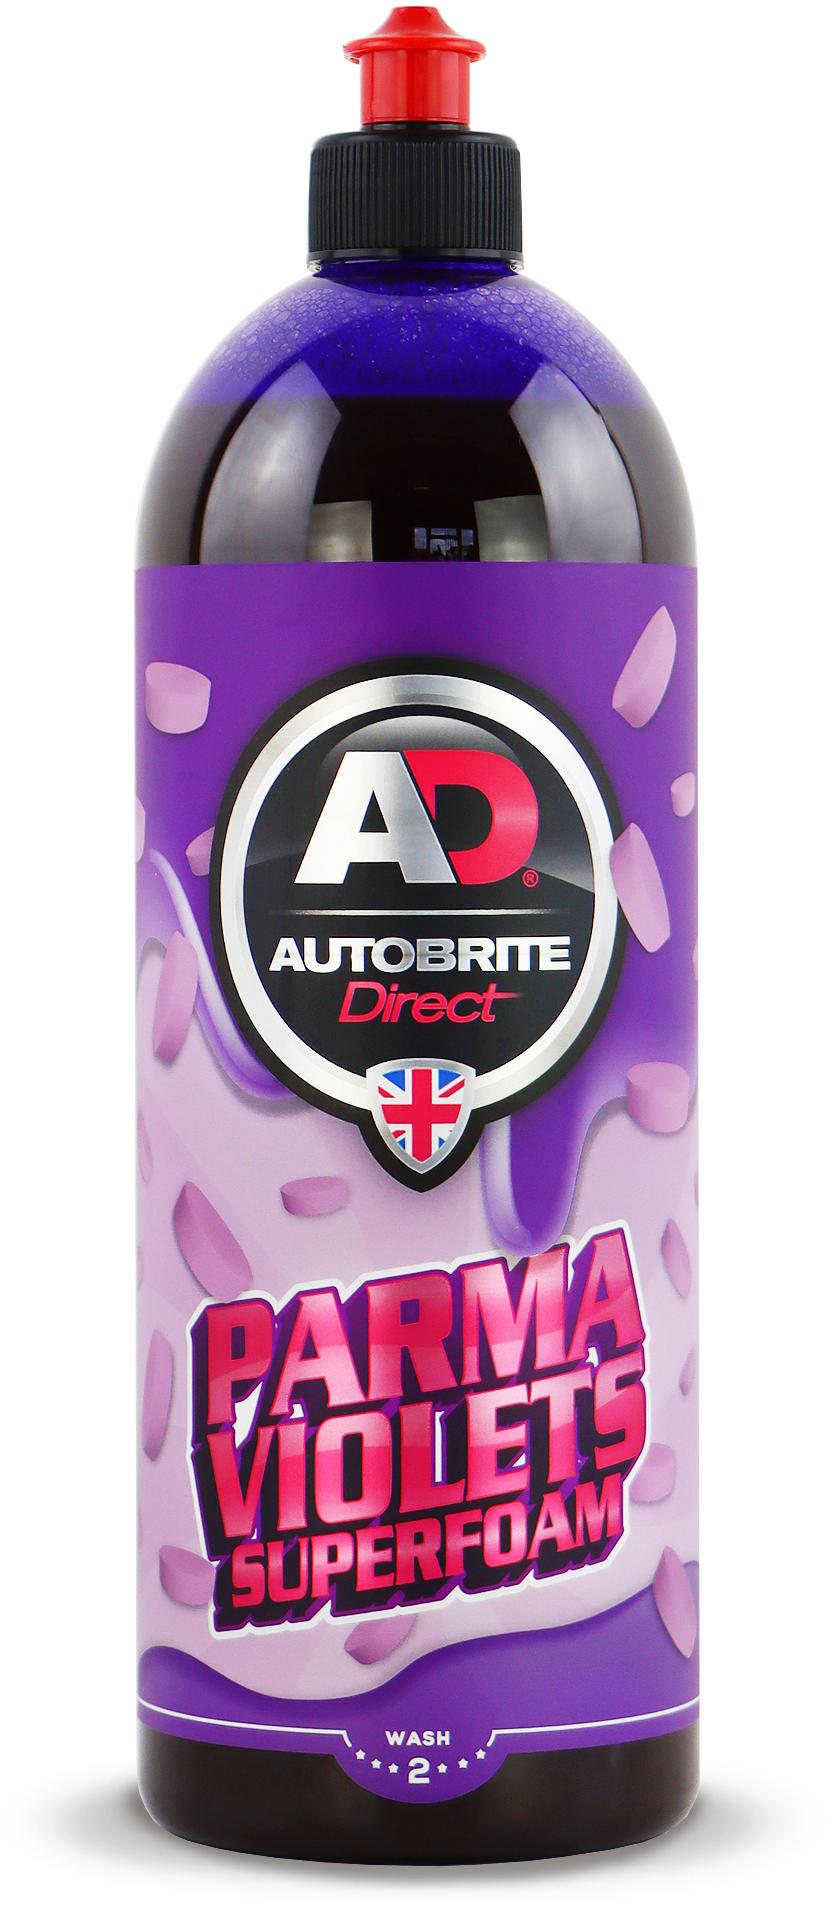 Autobrite Parma Violet Superfoam